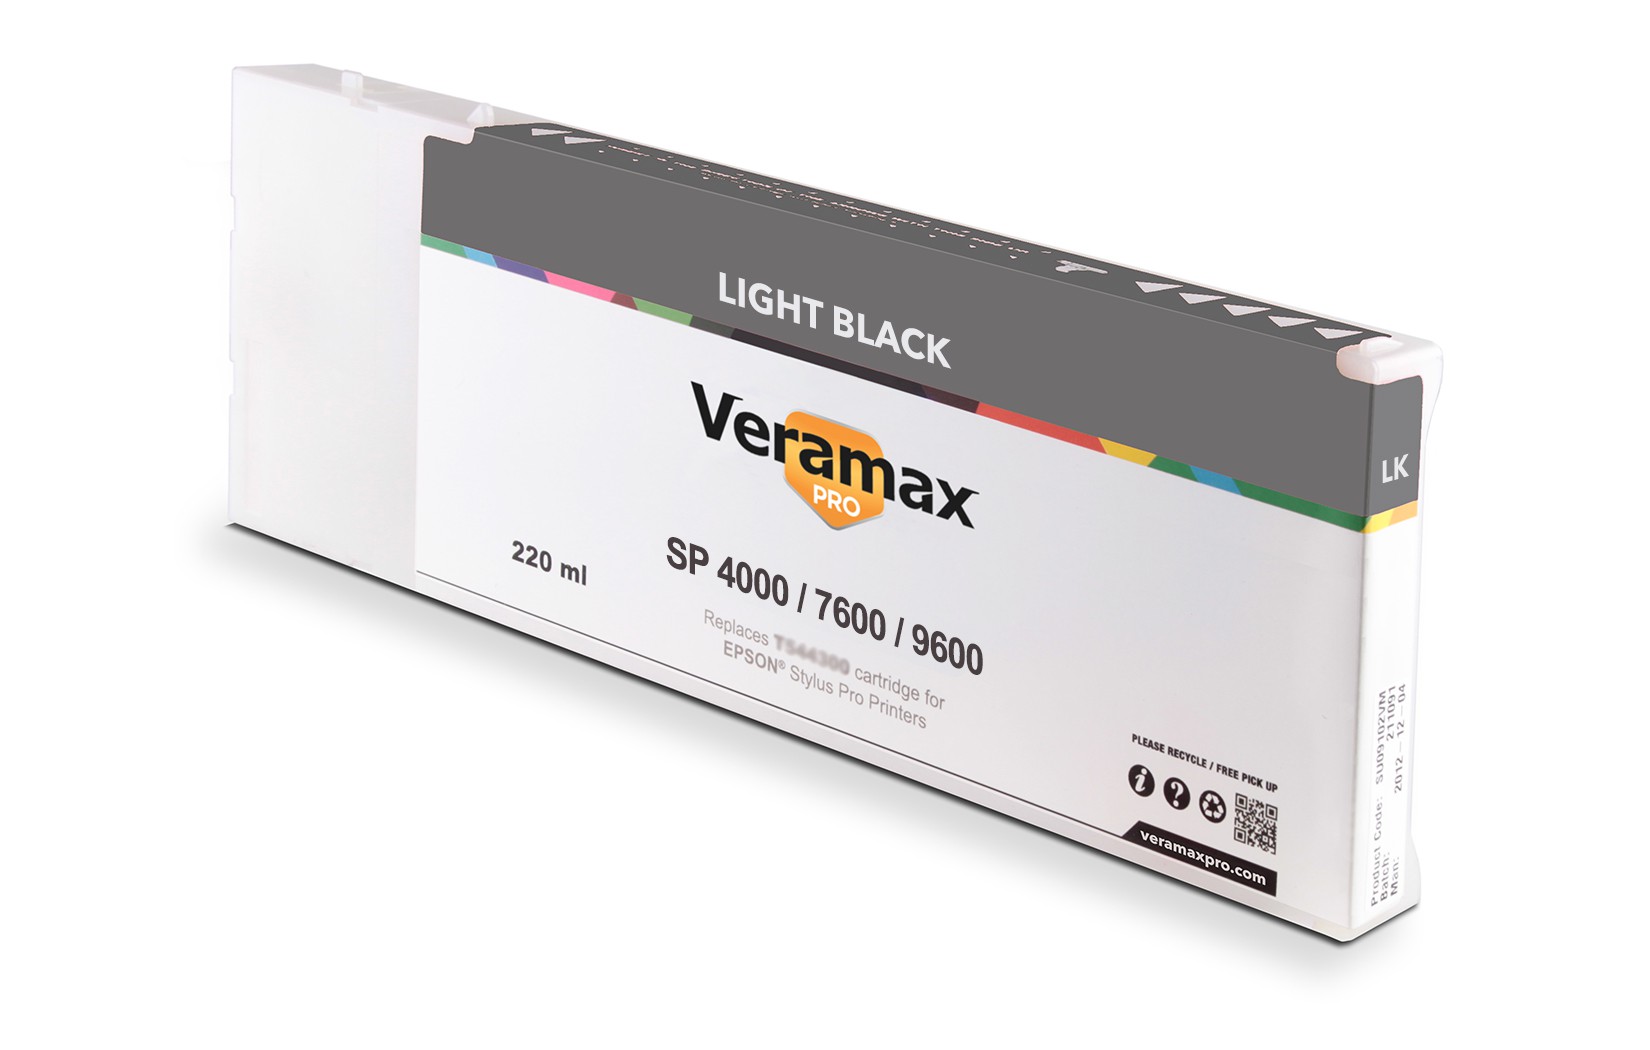 Veramax PRO SP 4000/7600/9600 220ml Light Black